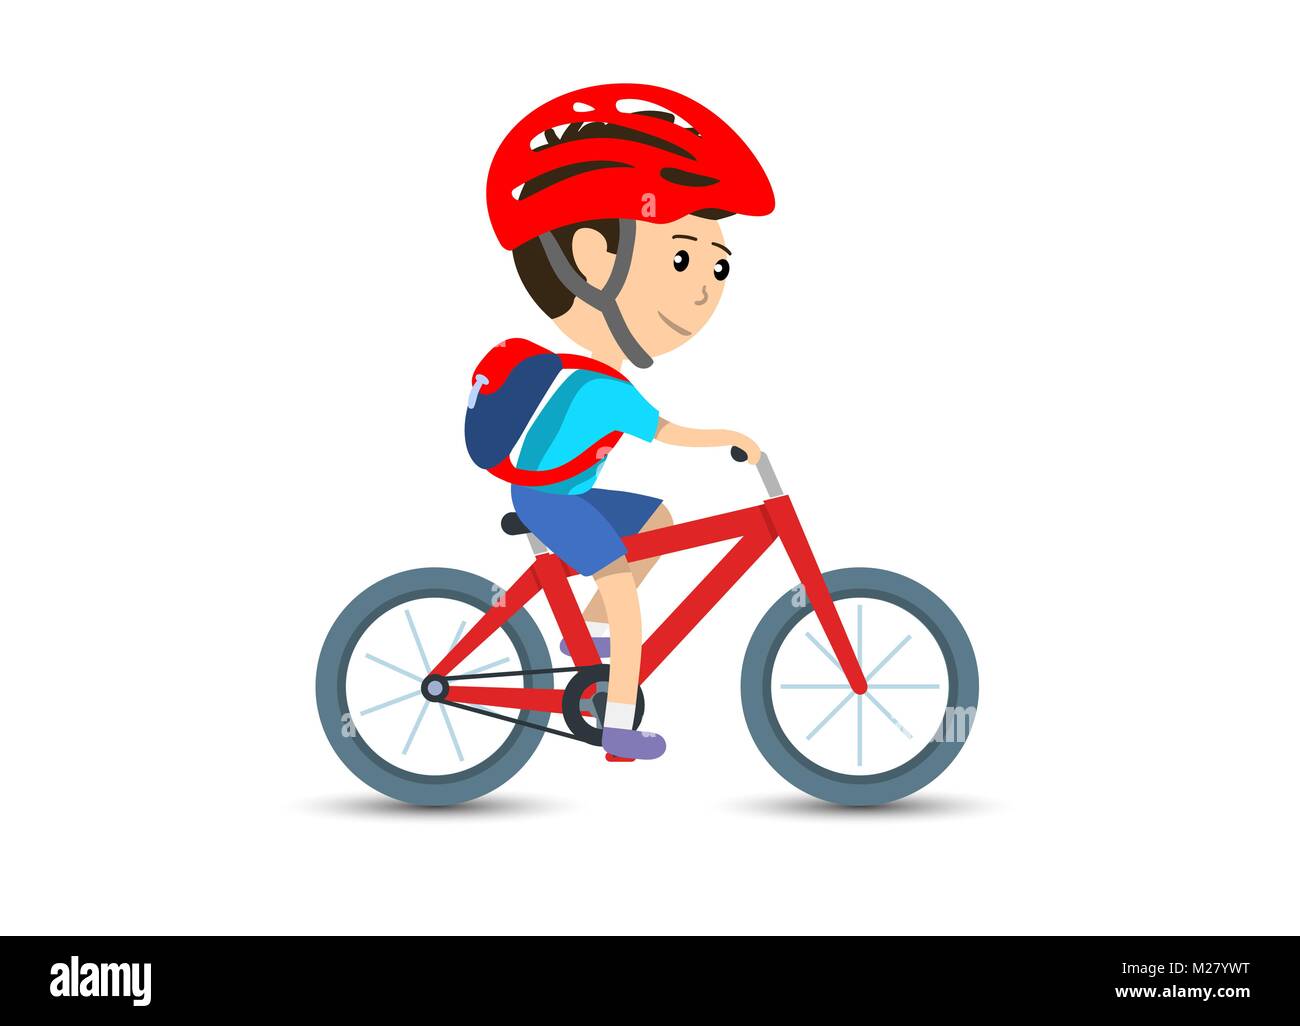 Jugendlich Kind Schule junge Radfahren mit dem Fahrrad und Helm tragen, Rucksack, Vector Illustration Stock Vektor